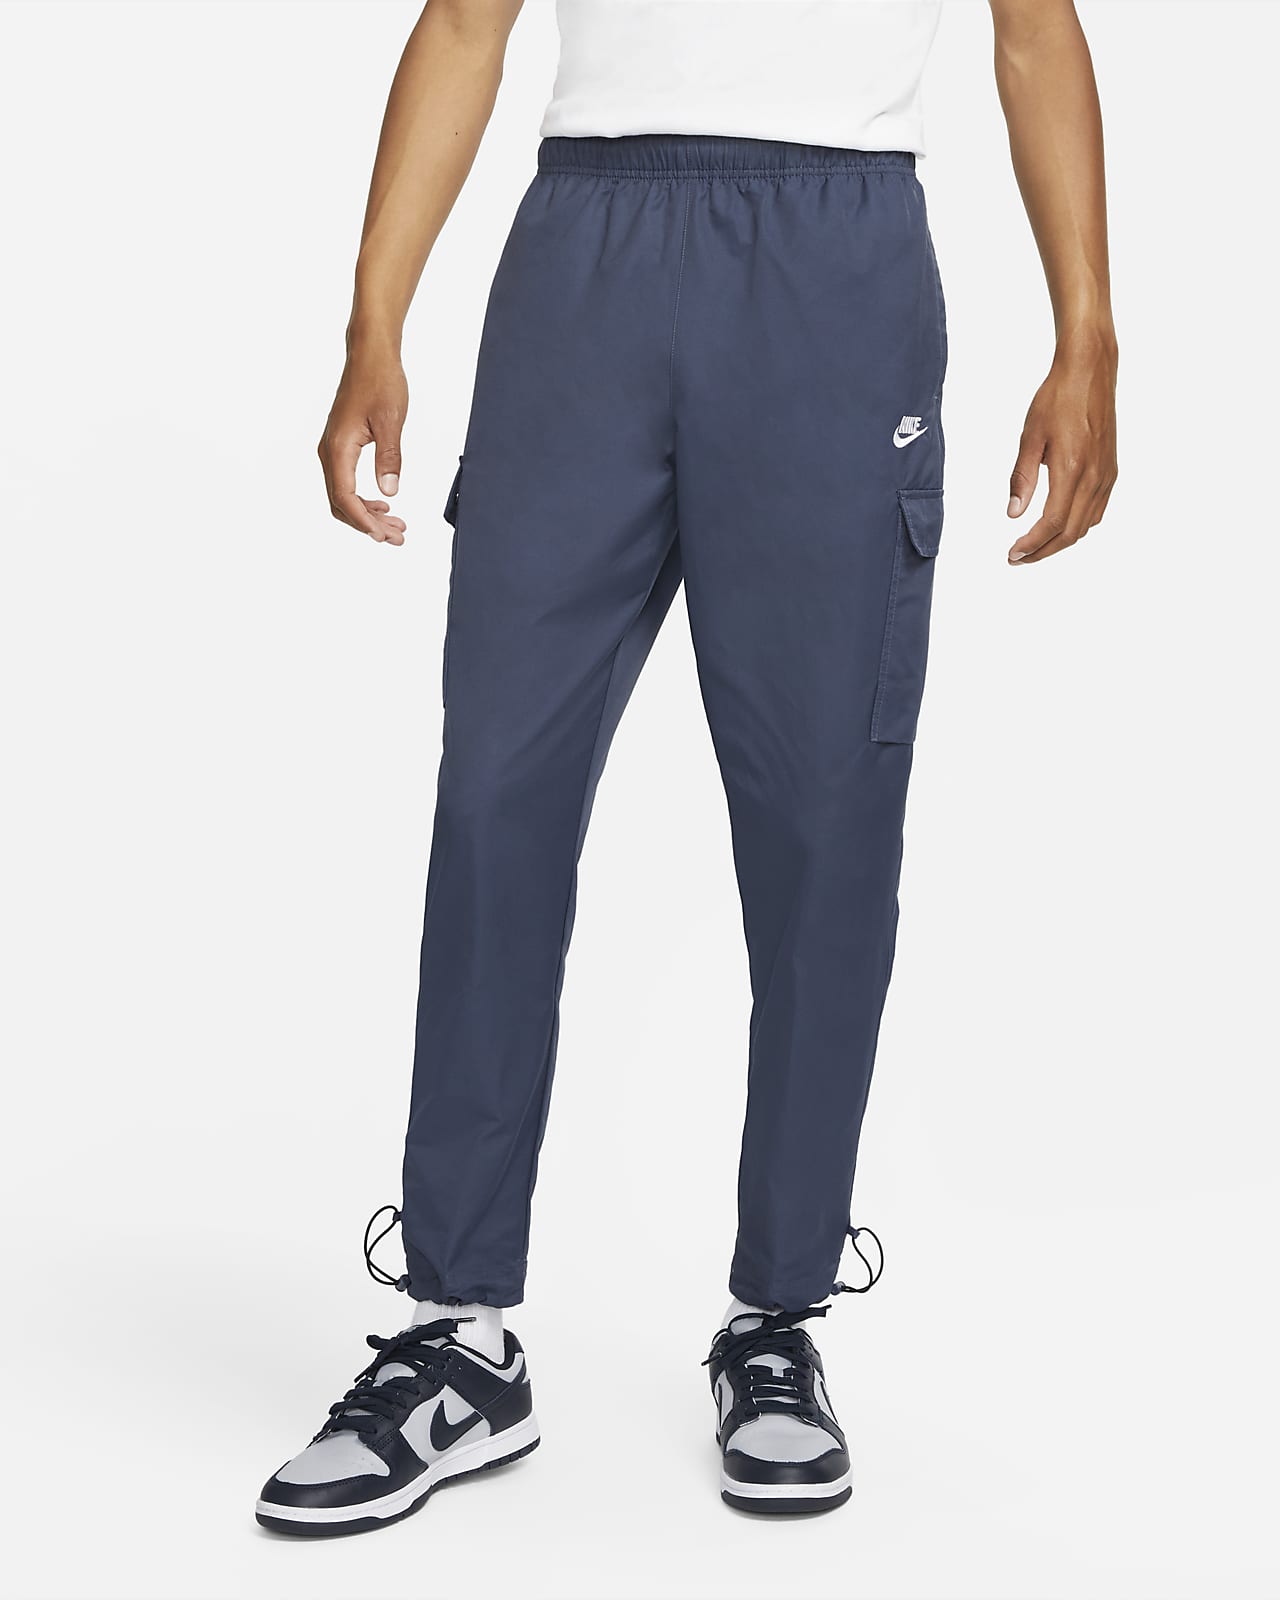 Pantalon tissé Nike Sportswear Repeat pour Homme